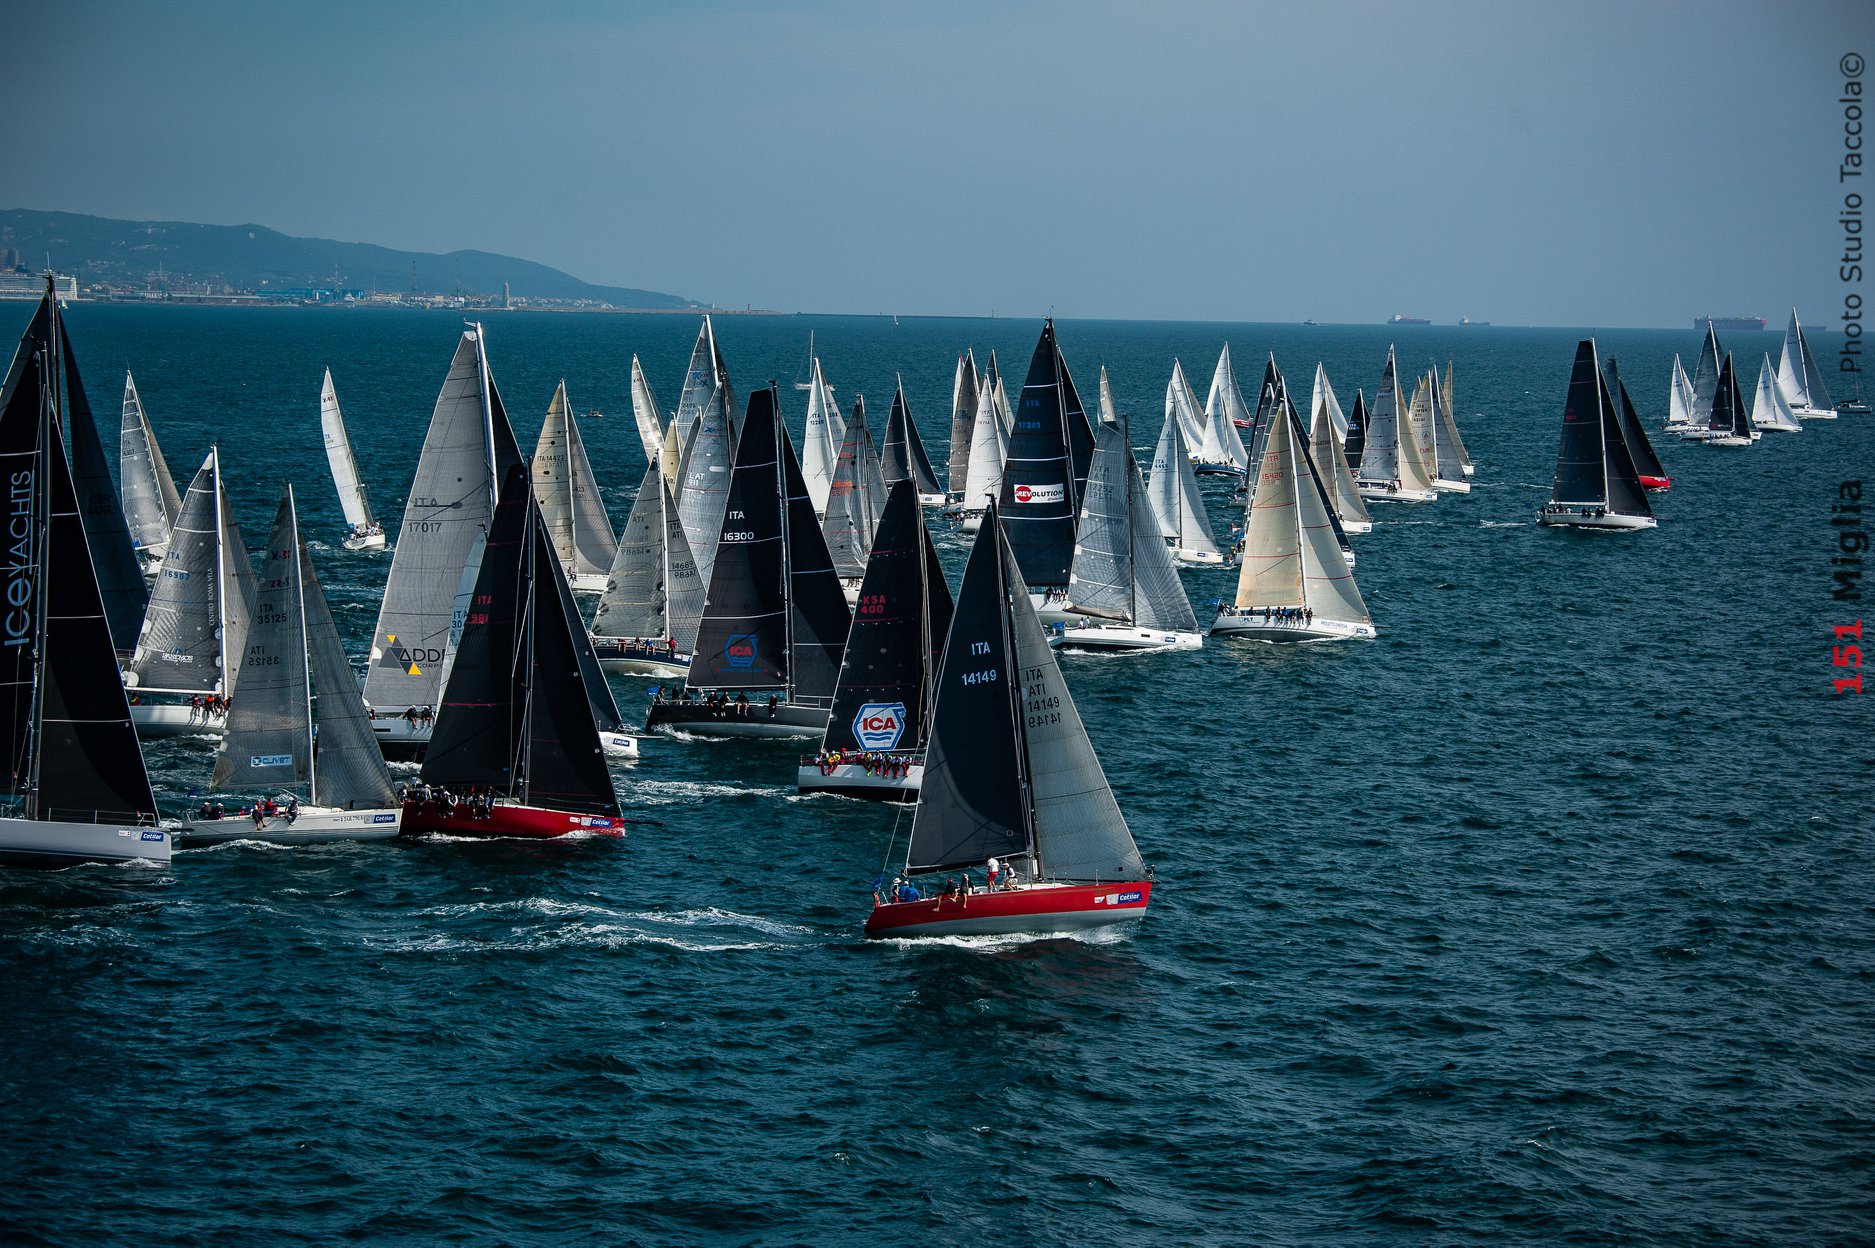 Buon vento ai soci partecipanti alla 151 miglia - NEWS - Yacht Club Costa Smeralda